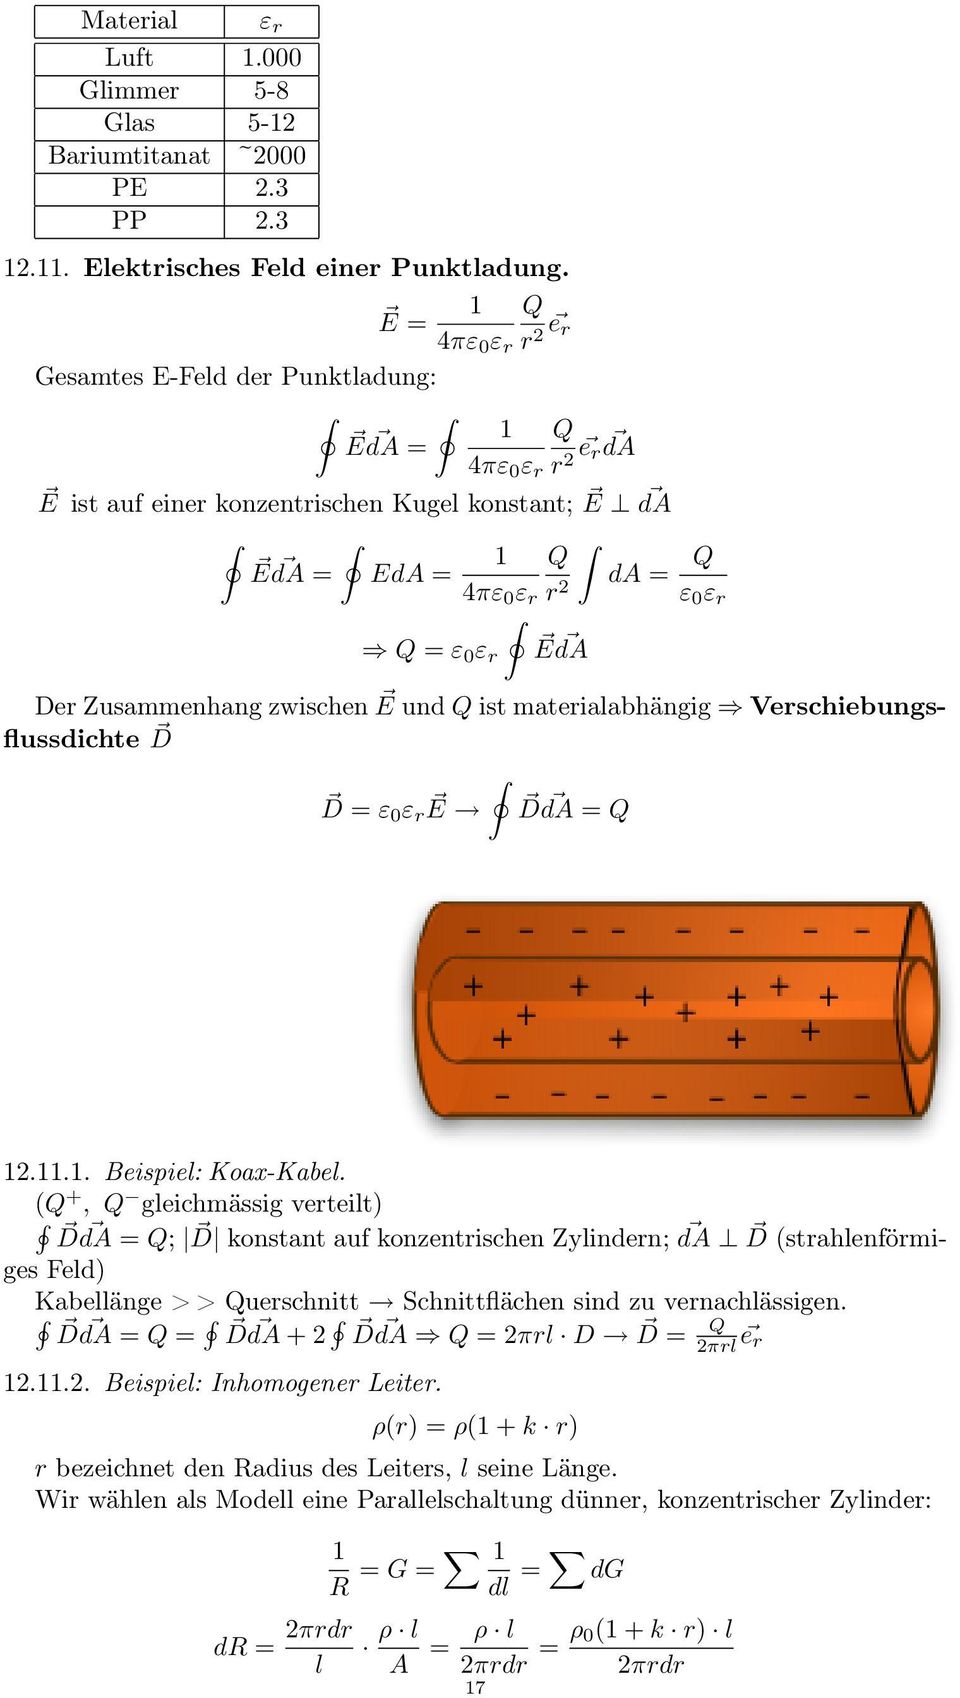 E da Der Zusammenhang zwischen E und Q ist materialabhängig Verschiebungsflussdichte D D = ε 0 ε re D da = Q 12.11.1. Beispiel: Koax-Kabel.